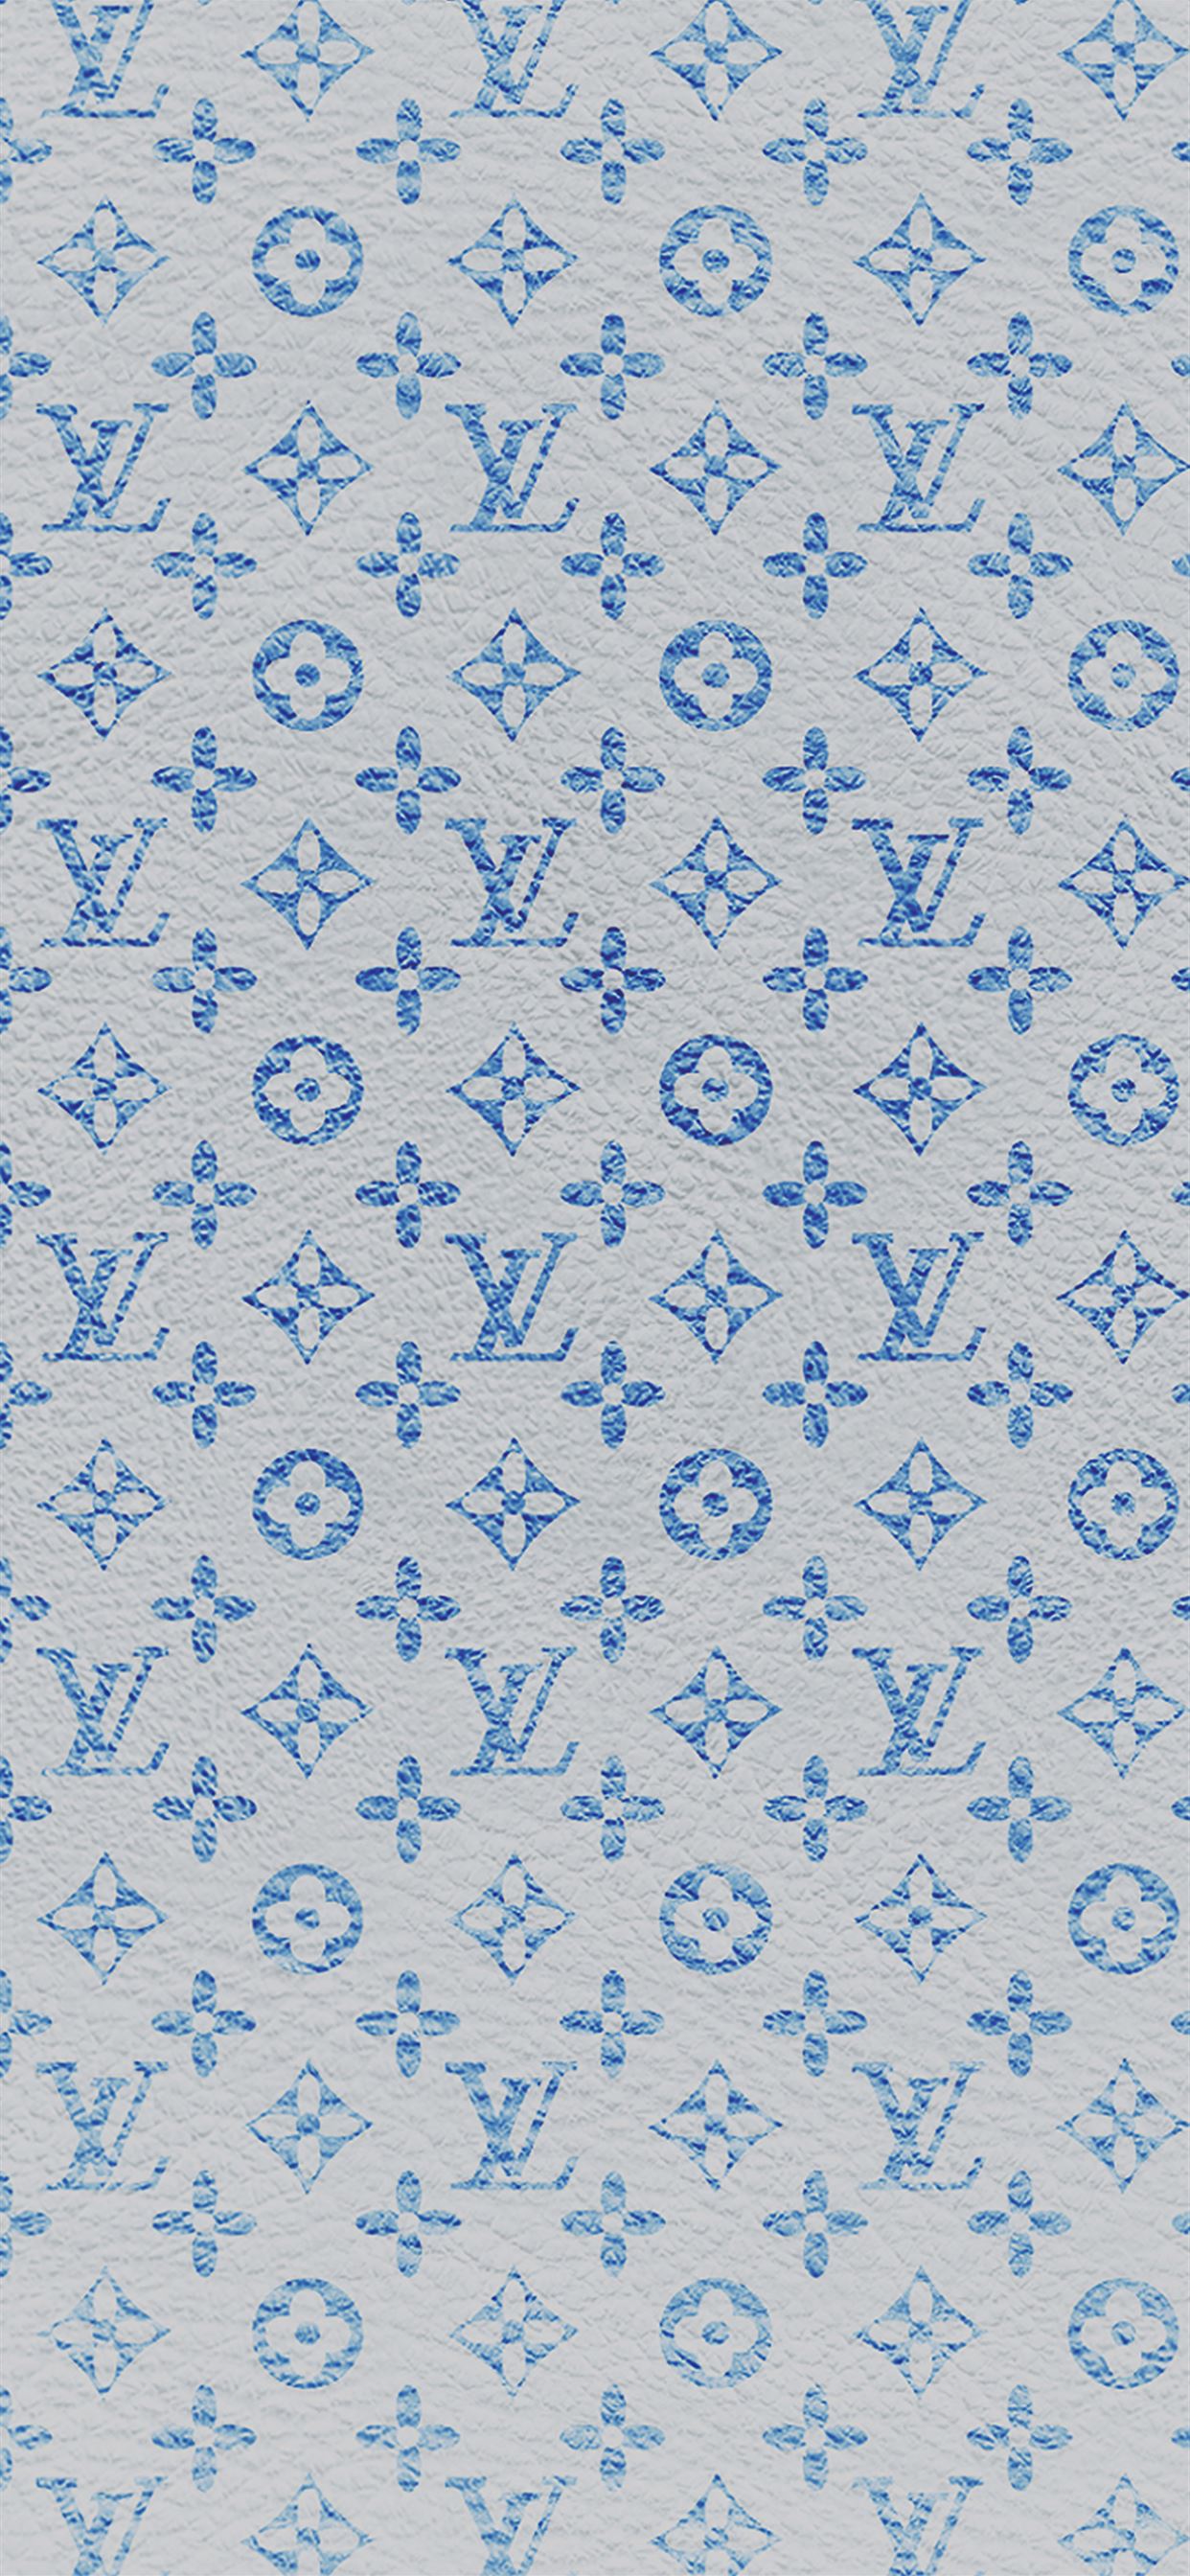 Louis Vuitton Wallpaper Iphone 7